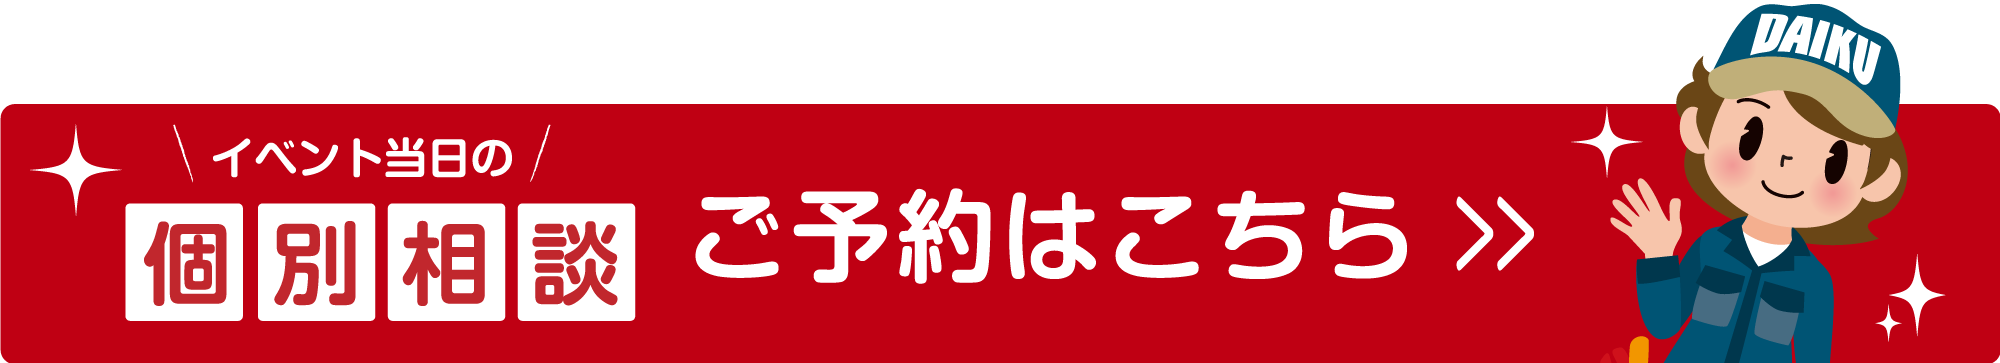 仙台のリフォーム専門店 DAIKUダイク 個別相談申し込みフォームへ